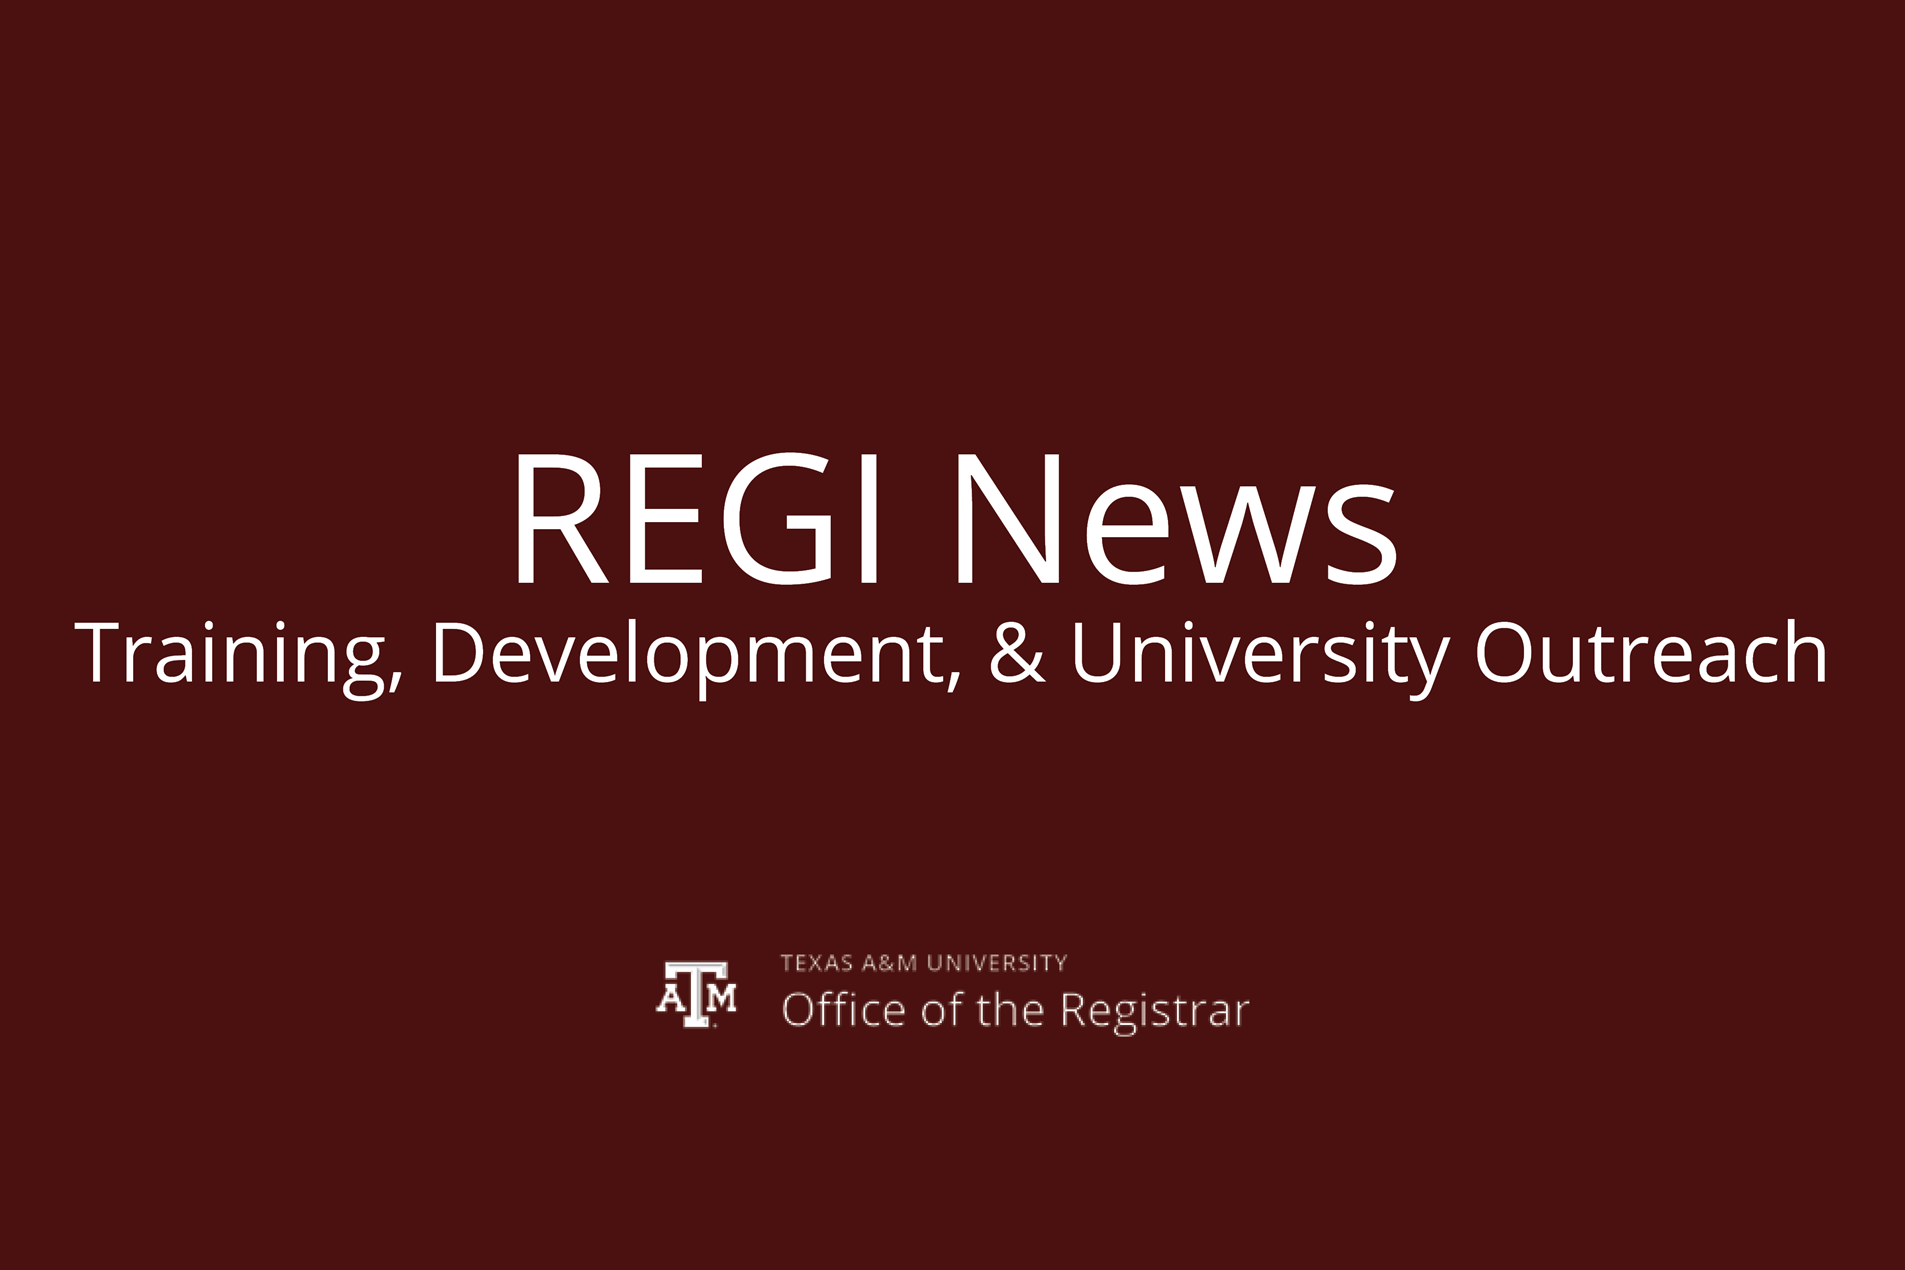 Registrar 101 Training - Registration Now Open